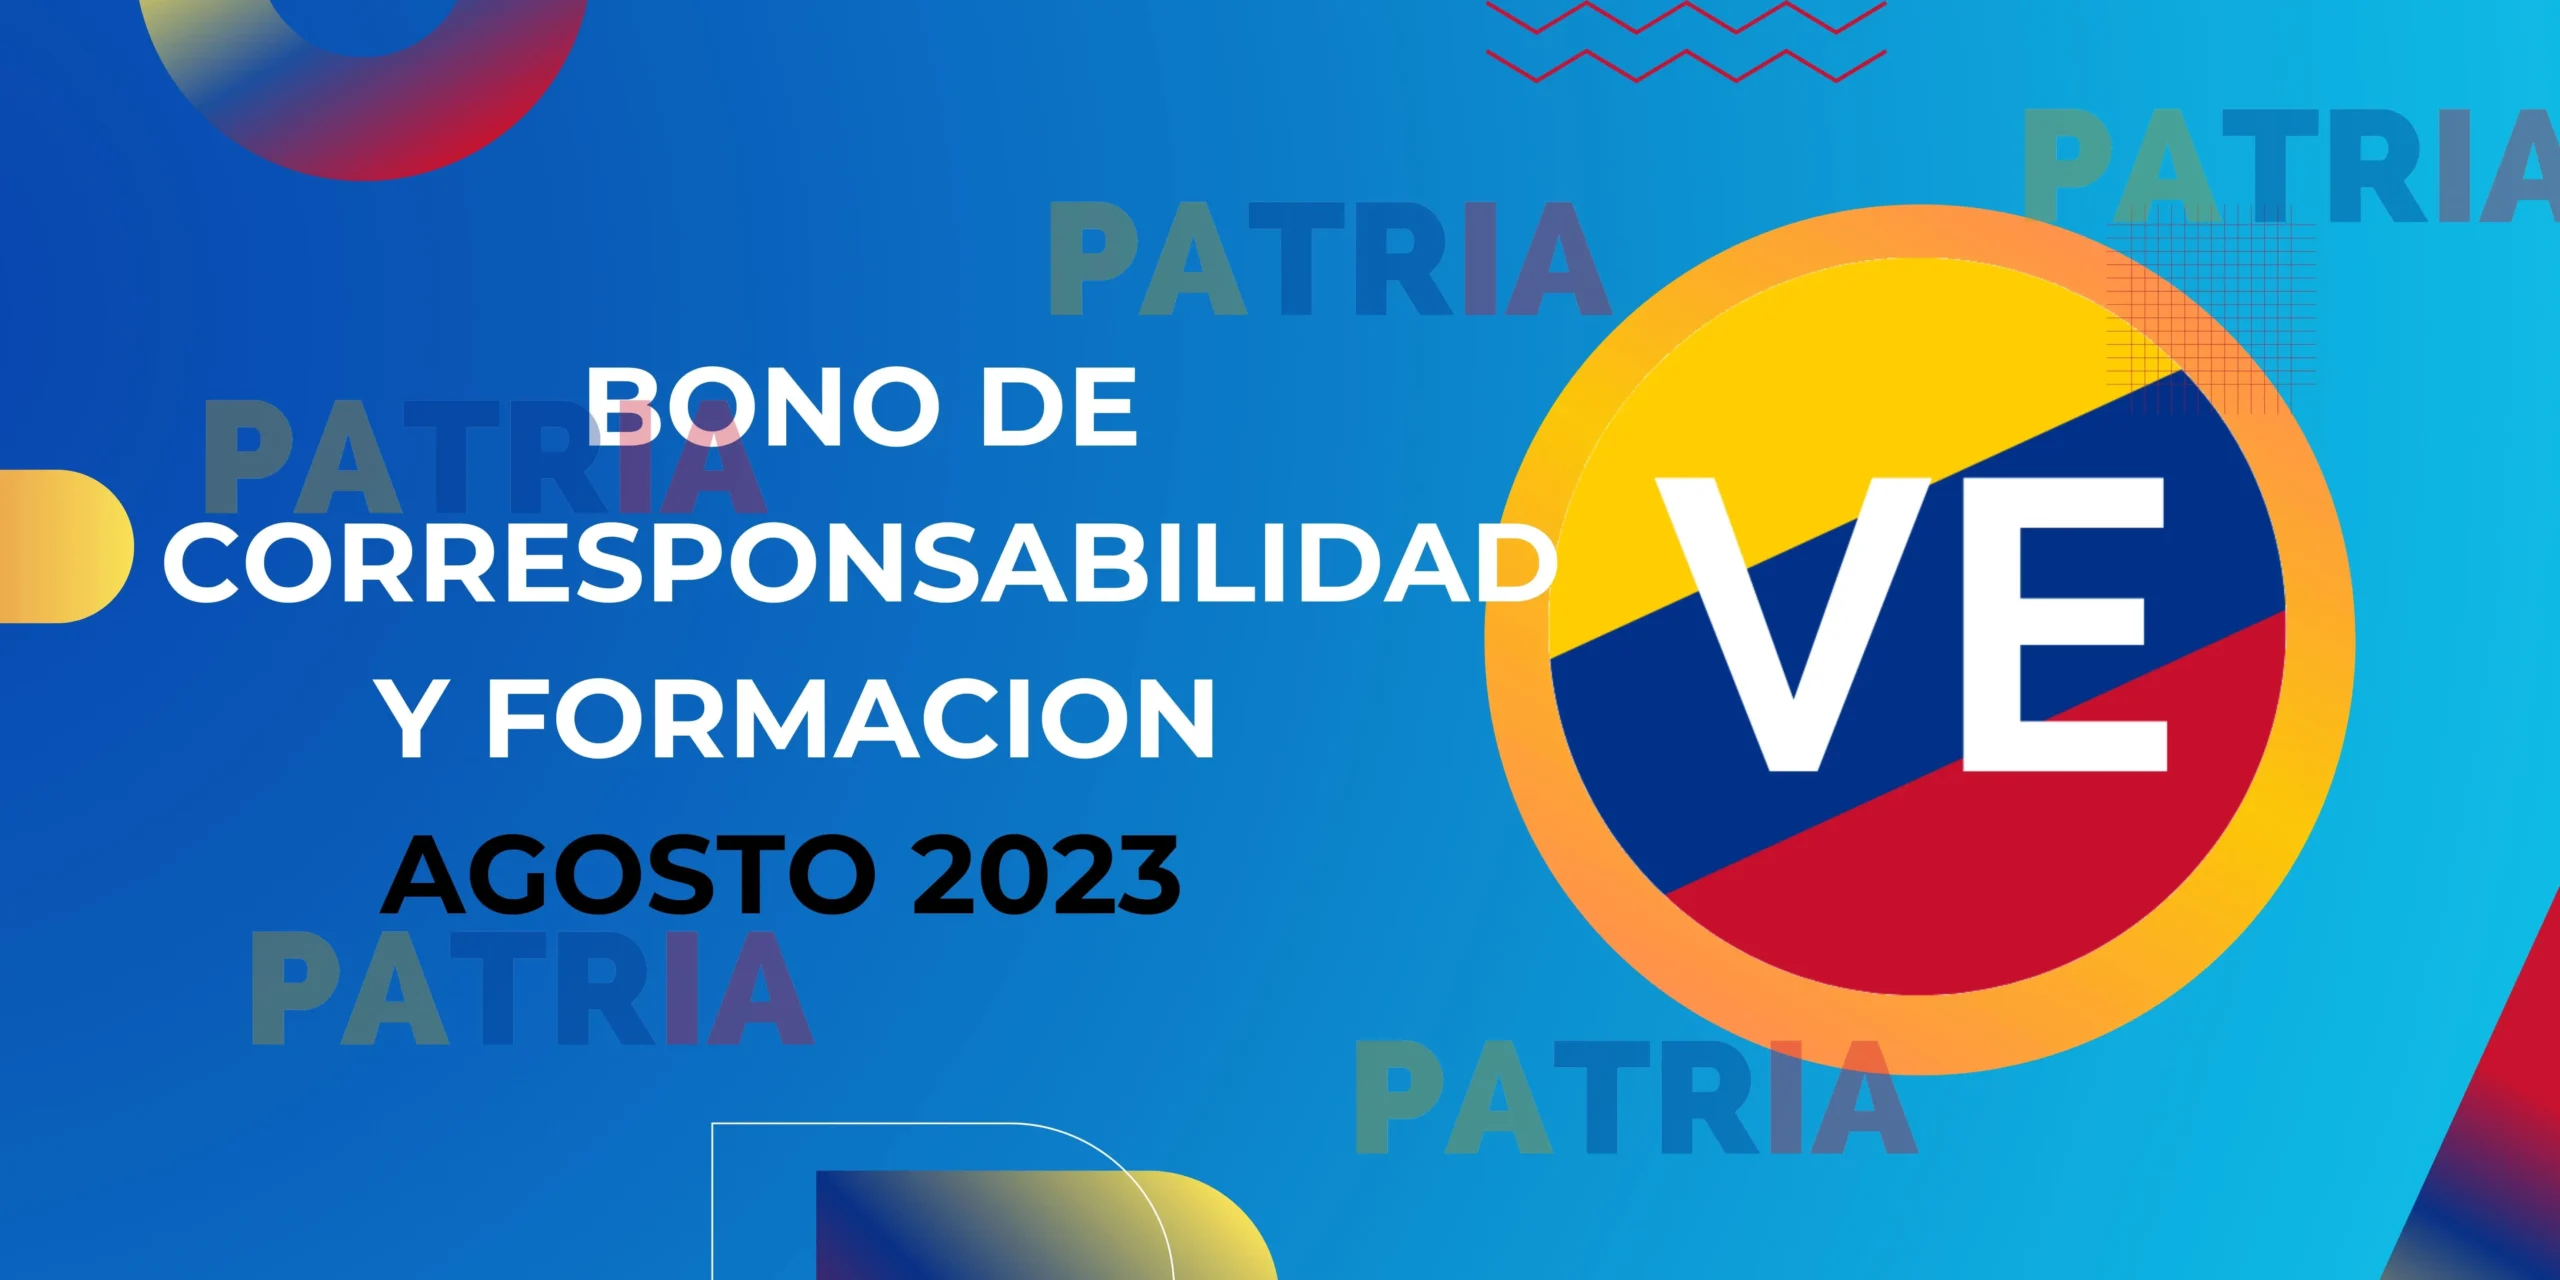 INICIA PAGO DEL BONO DE CORRESPONSABILIDAD Y FORMACION AGOSTO 2023 SISTEMA PATRIA VE